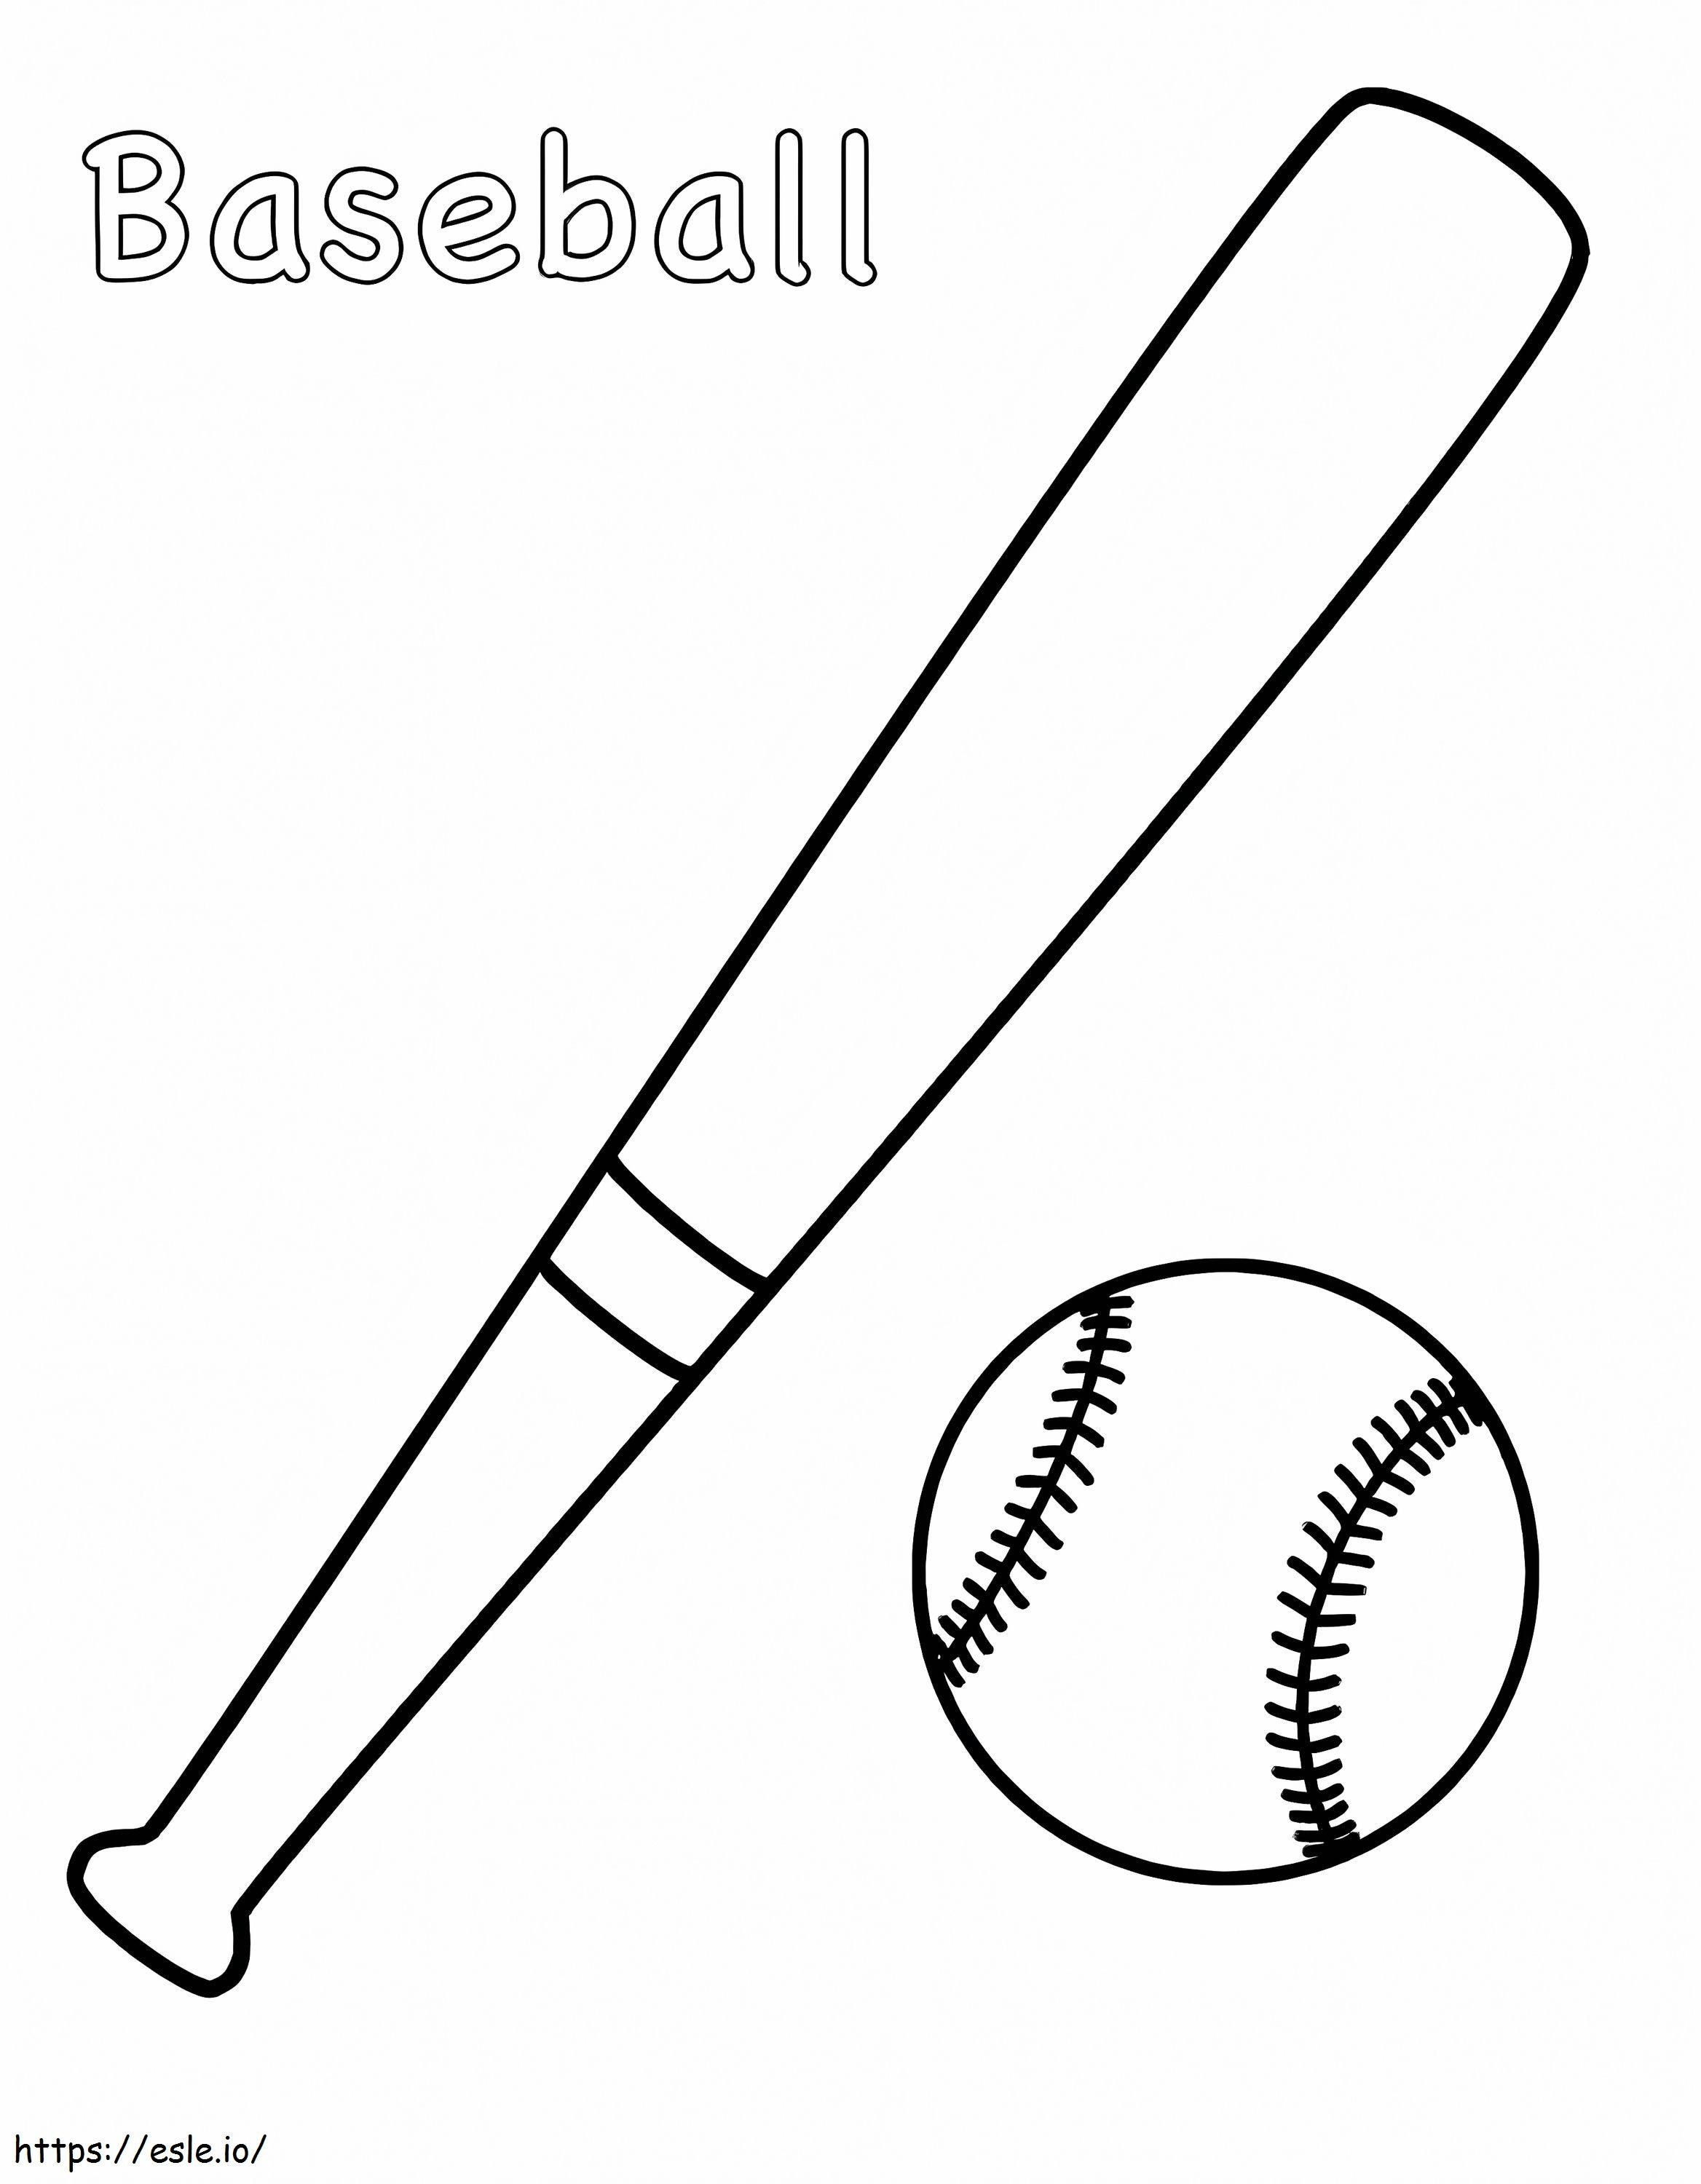 Baseballschläger und Ball ausmalbilder